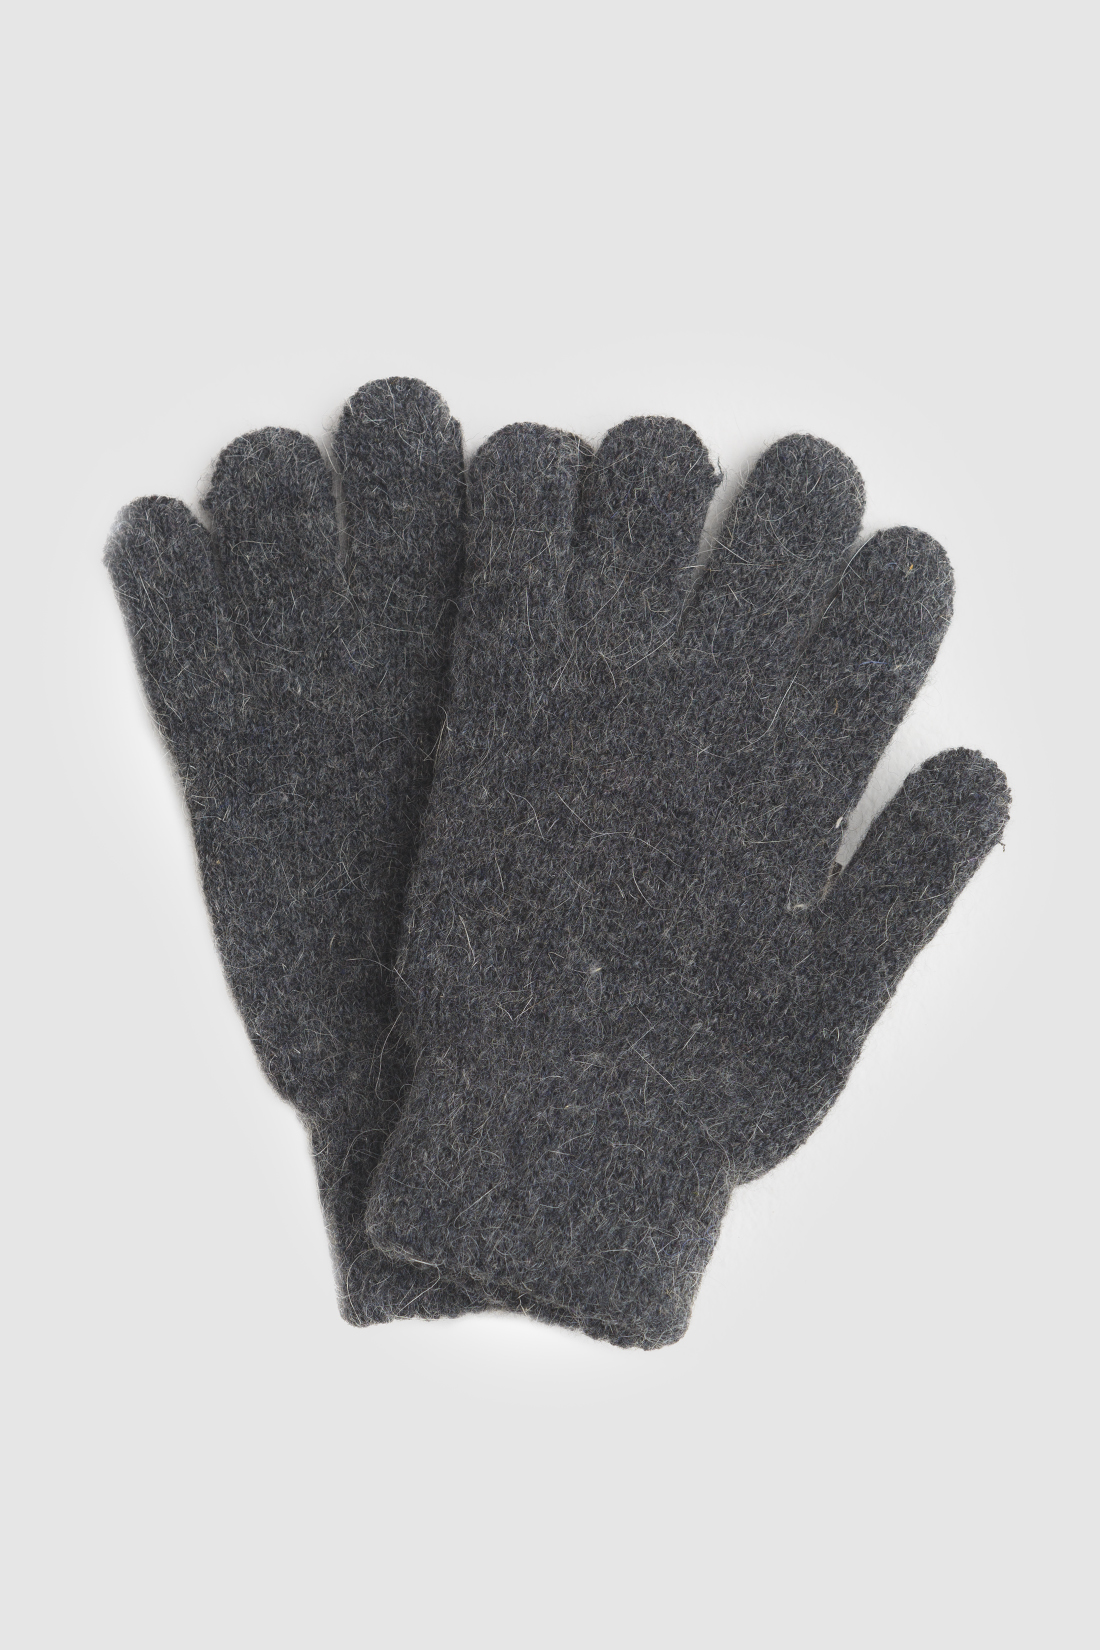 Перчатки (арт. baon B360522), размер Без/раз, цвет серый